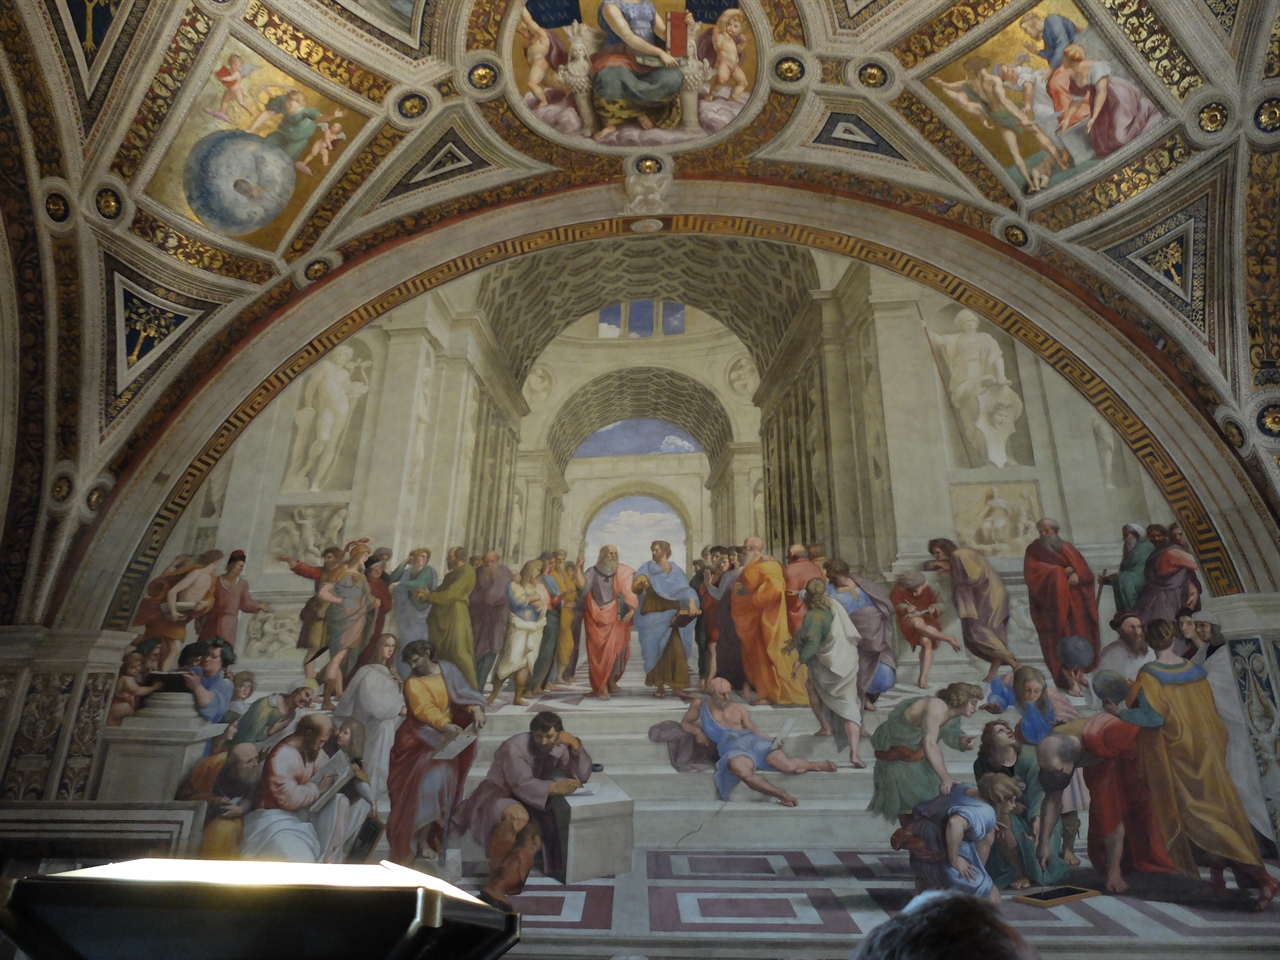 라파엘로, ‘아테네 학당’, 바티칸 박물관 서명의 방. 고대의 사상가들을 한 자리에 묘사한 이 그림은 서양 철학의 근간을 계승한 이탈리아 르네상스의 자부심을 드러내는 작품이라 할 수 있습니다.